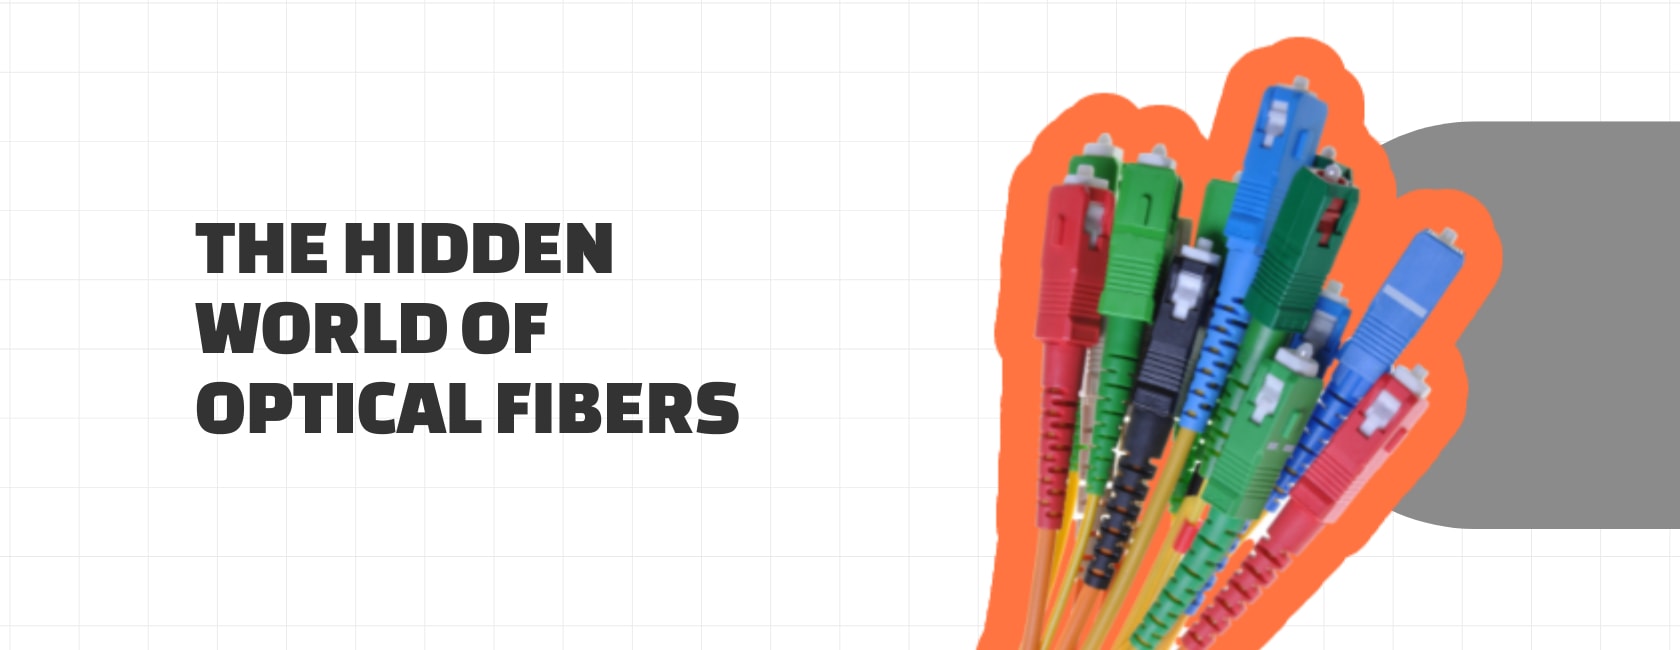 fiber optics materials